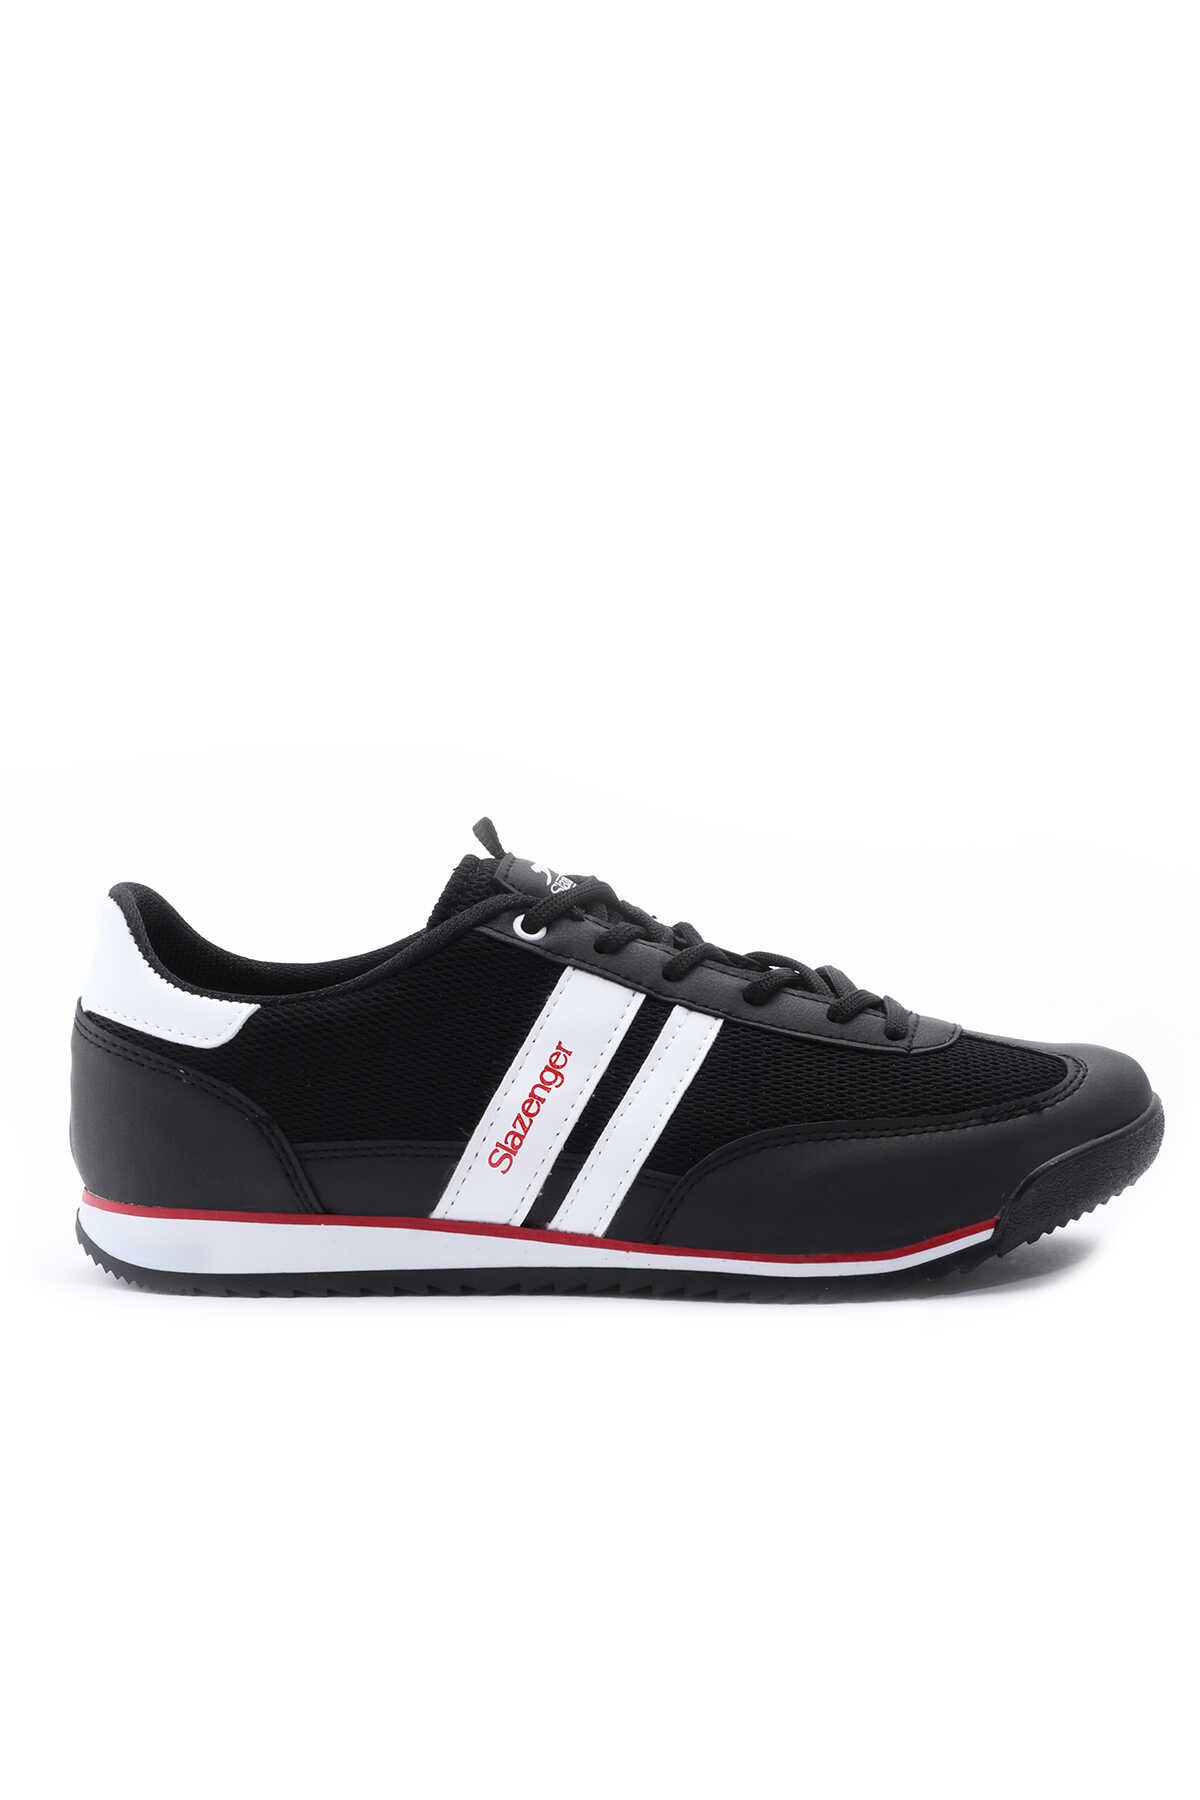 Slazenger - Slazenger ABBE I Sneaker Erkek Ayakkabı Siyah / Beyaz